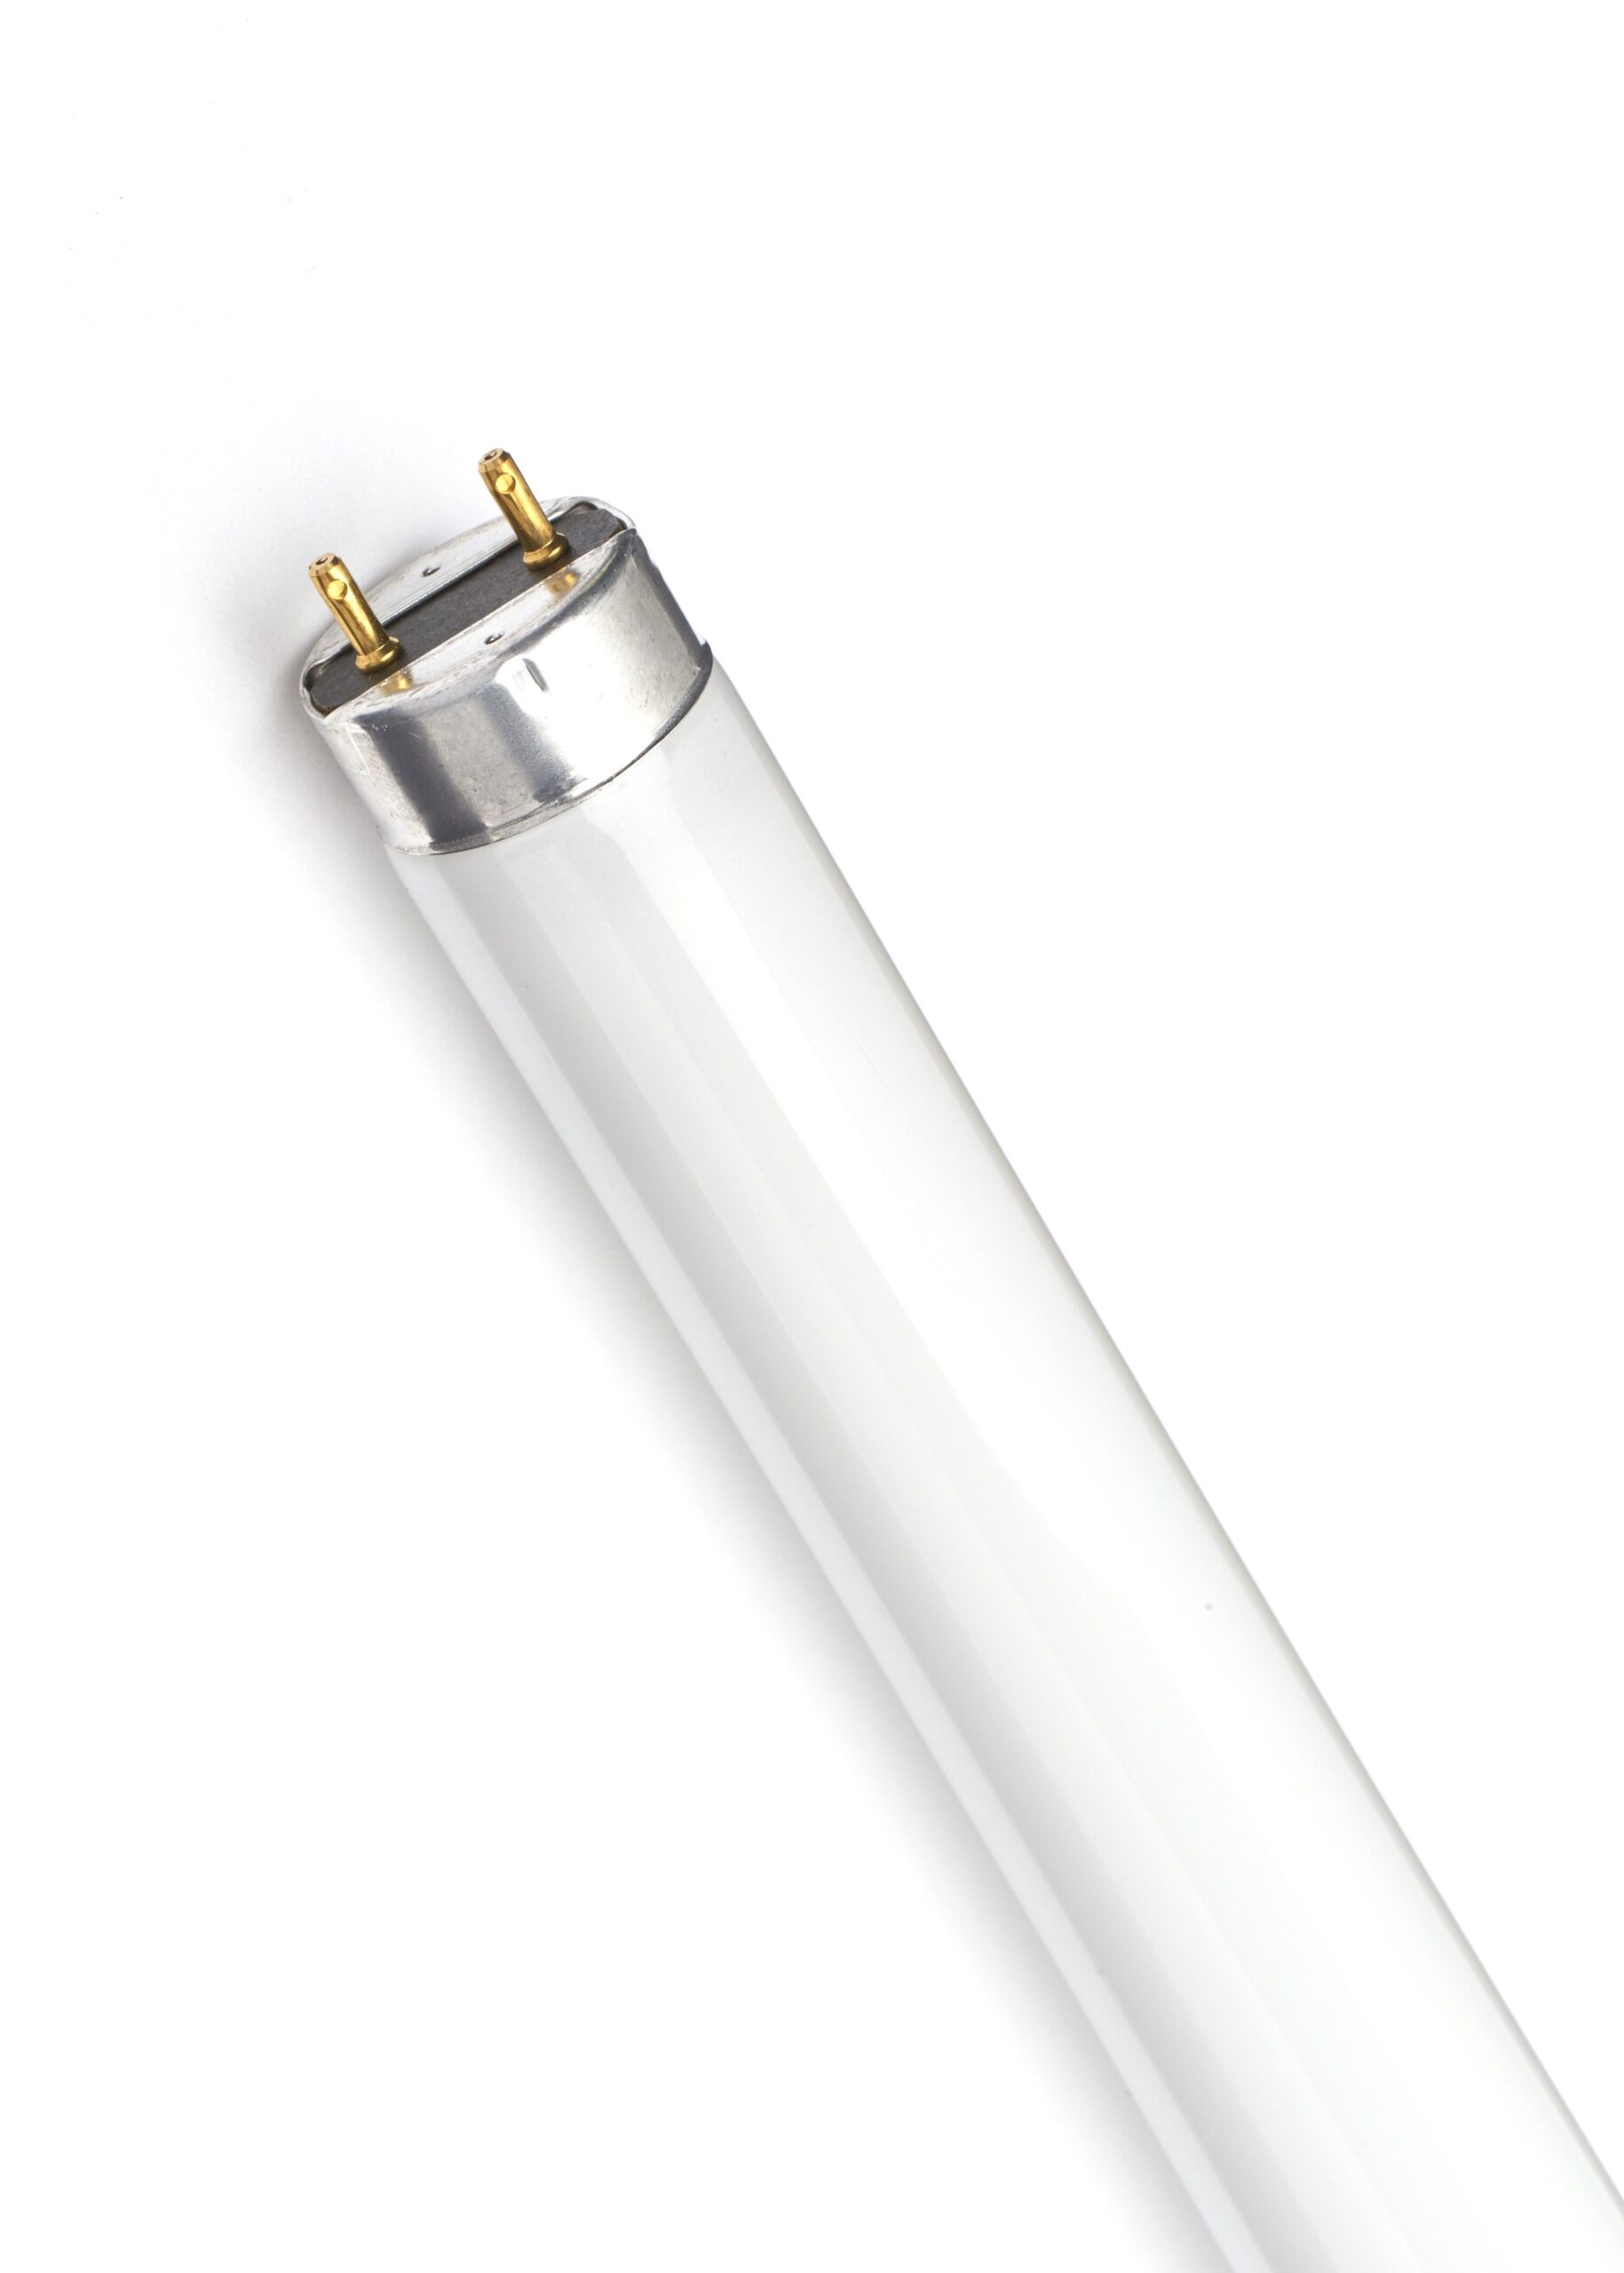 Lampada Neon Fluorescente F58 T8 33/4300K (25 PEZZI) - GE LIGHTING 00029570  - Fazio SRL